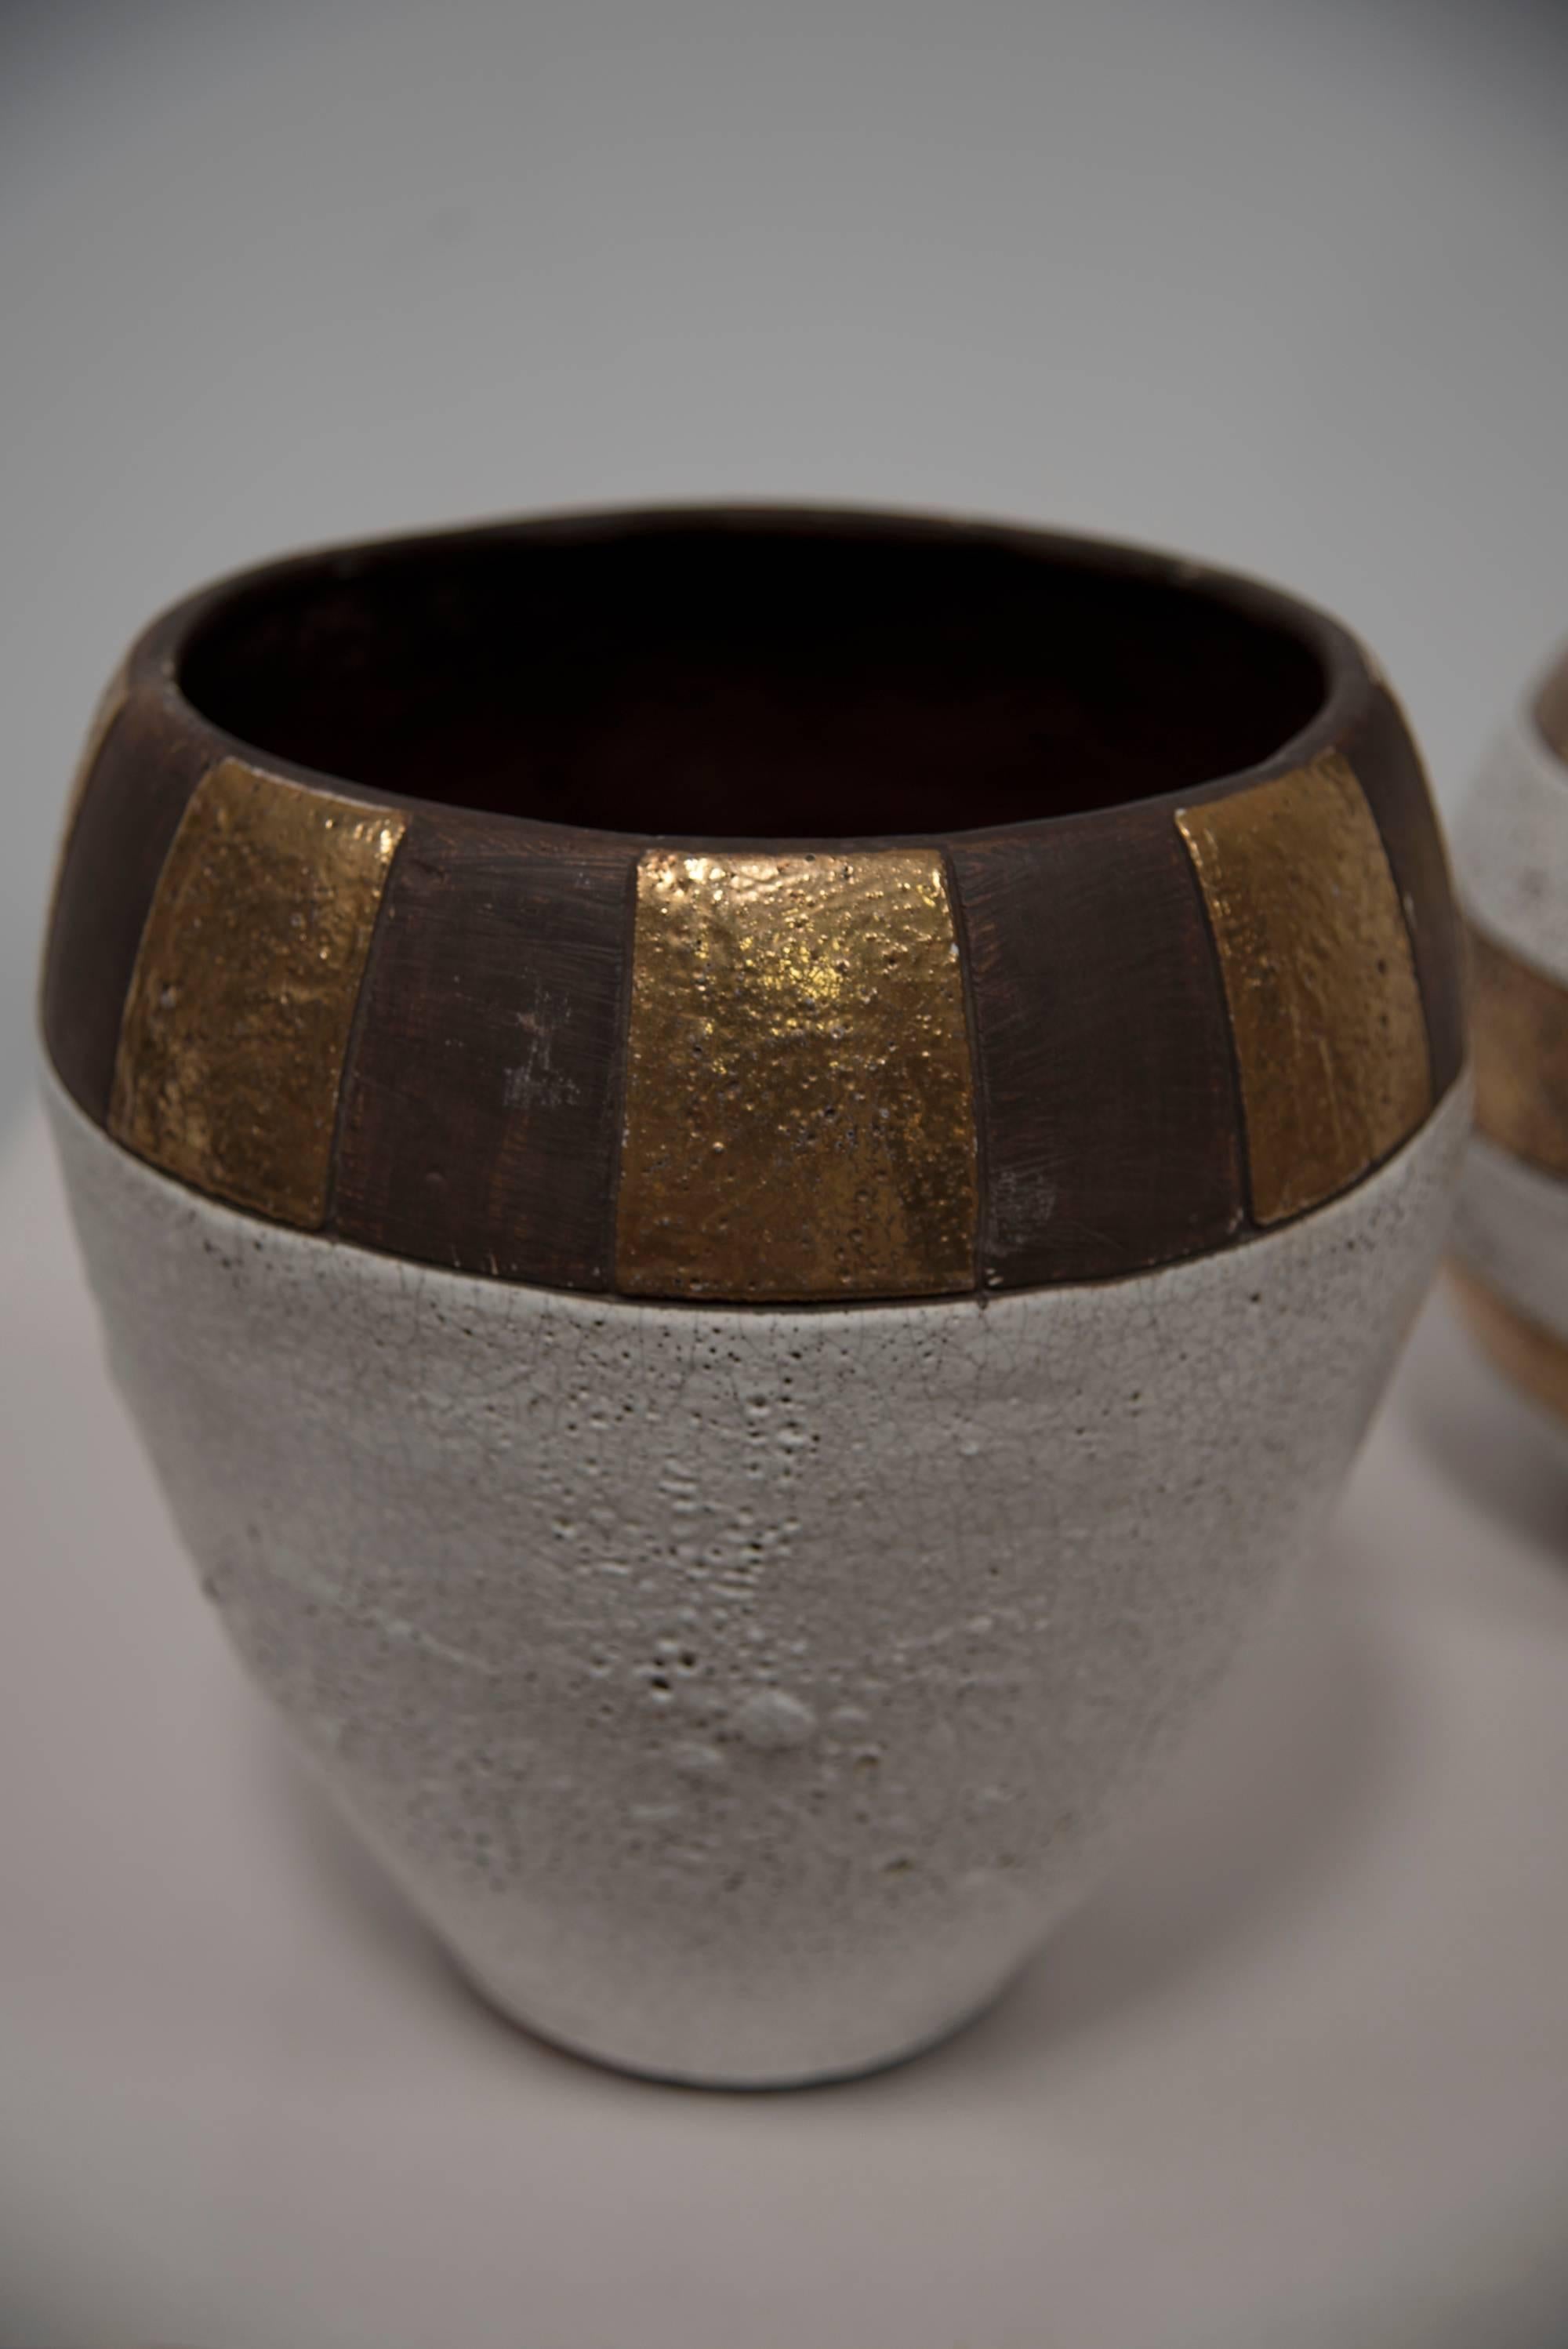 Ein robustes Set aus drei beigen, schwarz gestreiften und naturfarbenen, glasierten amerikanischen Keramikgefäßen mit goldenen Akzenten und Craquelé-Glasur. Eingraviert als JARU-Designs. Jaru Pottery wurde 1958 gegründet, ist aber nicht mehr auf dem